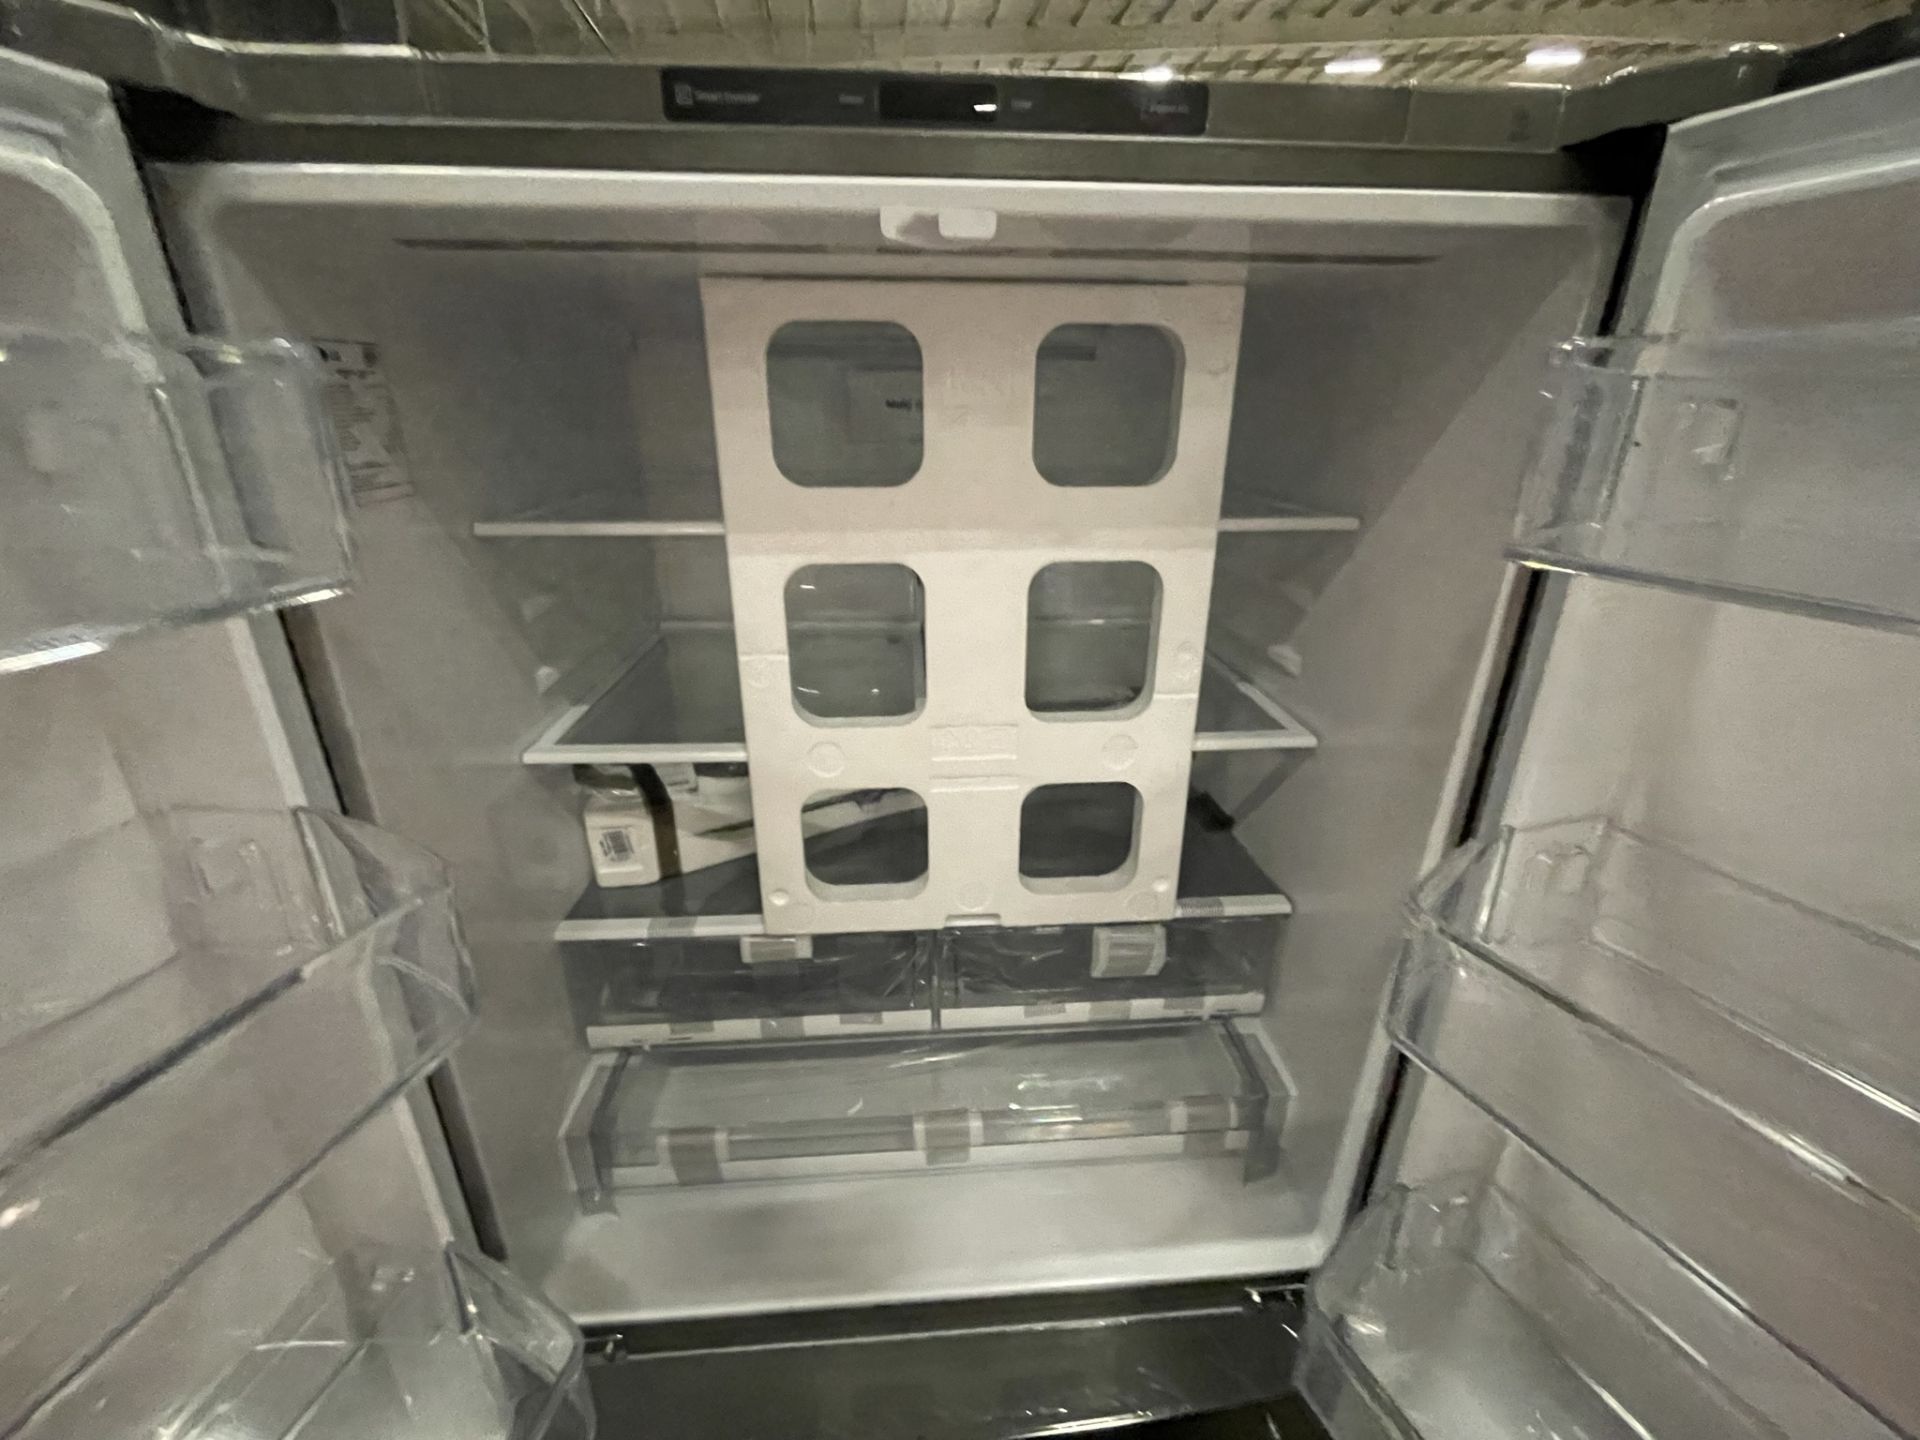 (EQUIPO NUEVO) 1 Refrigerador Marca LG, Modelo GM29BP, Serie U25053, Color Gris, LB-612635.; (Nuevo - Image 7 of 8